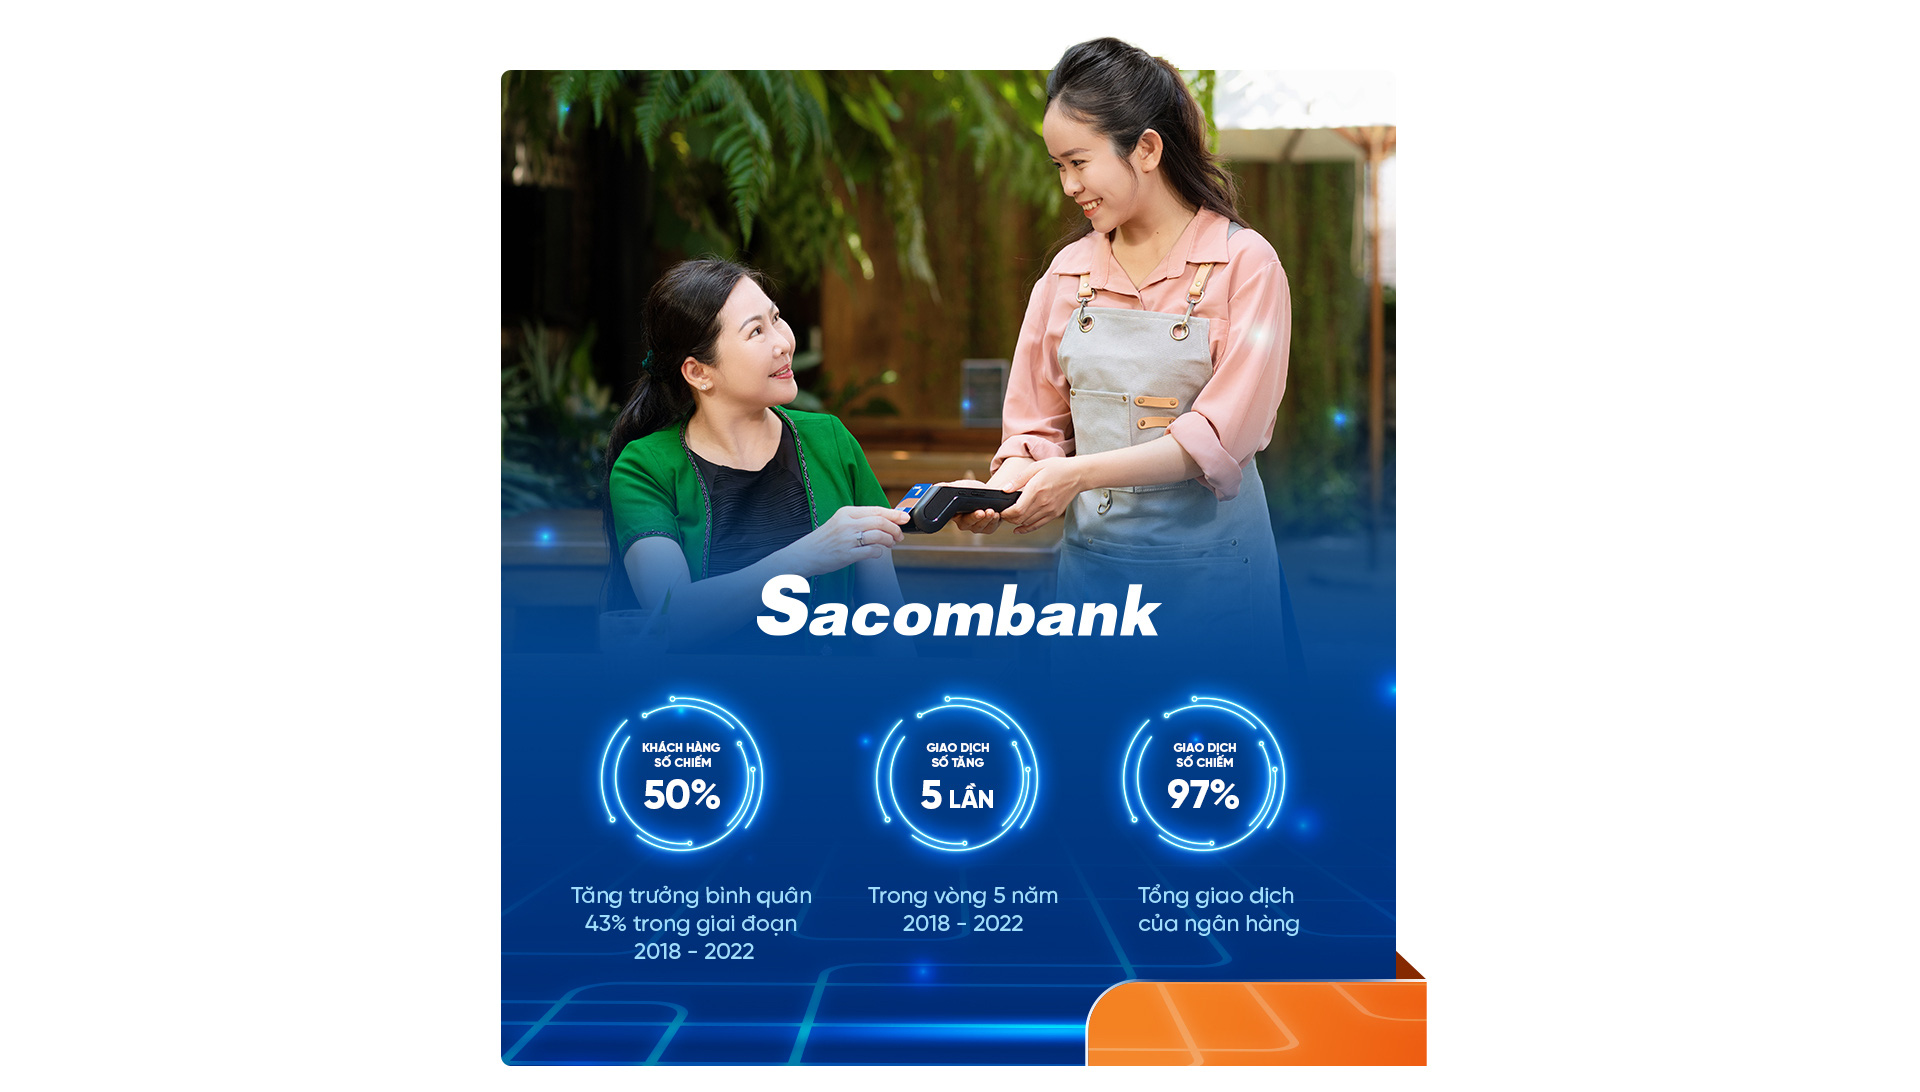 Sacombank thần tốc mở rộng thị phần bằng chiến lược số hóa toàn diện - Ảnh 7.